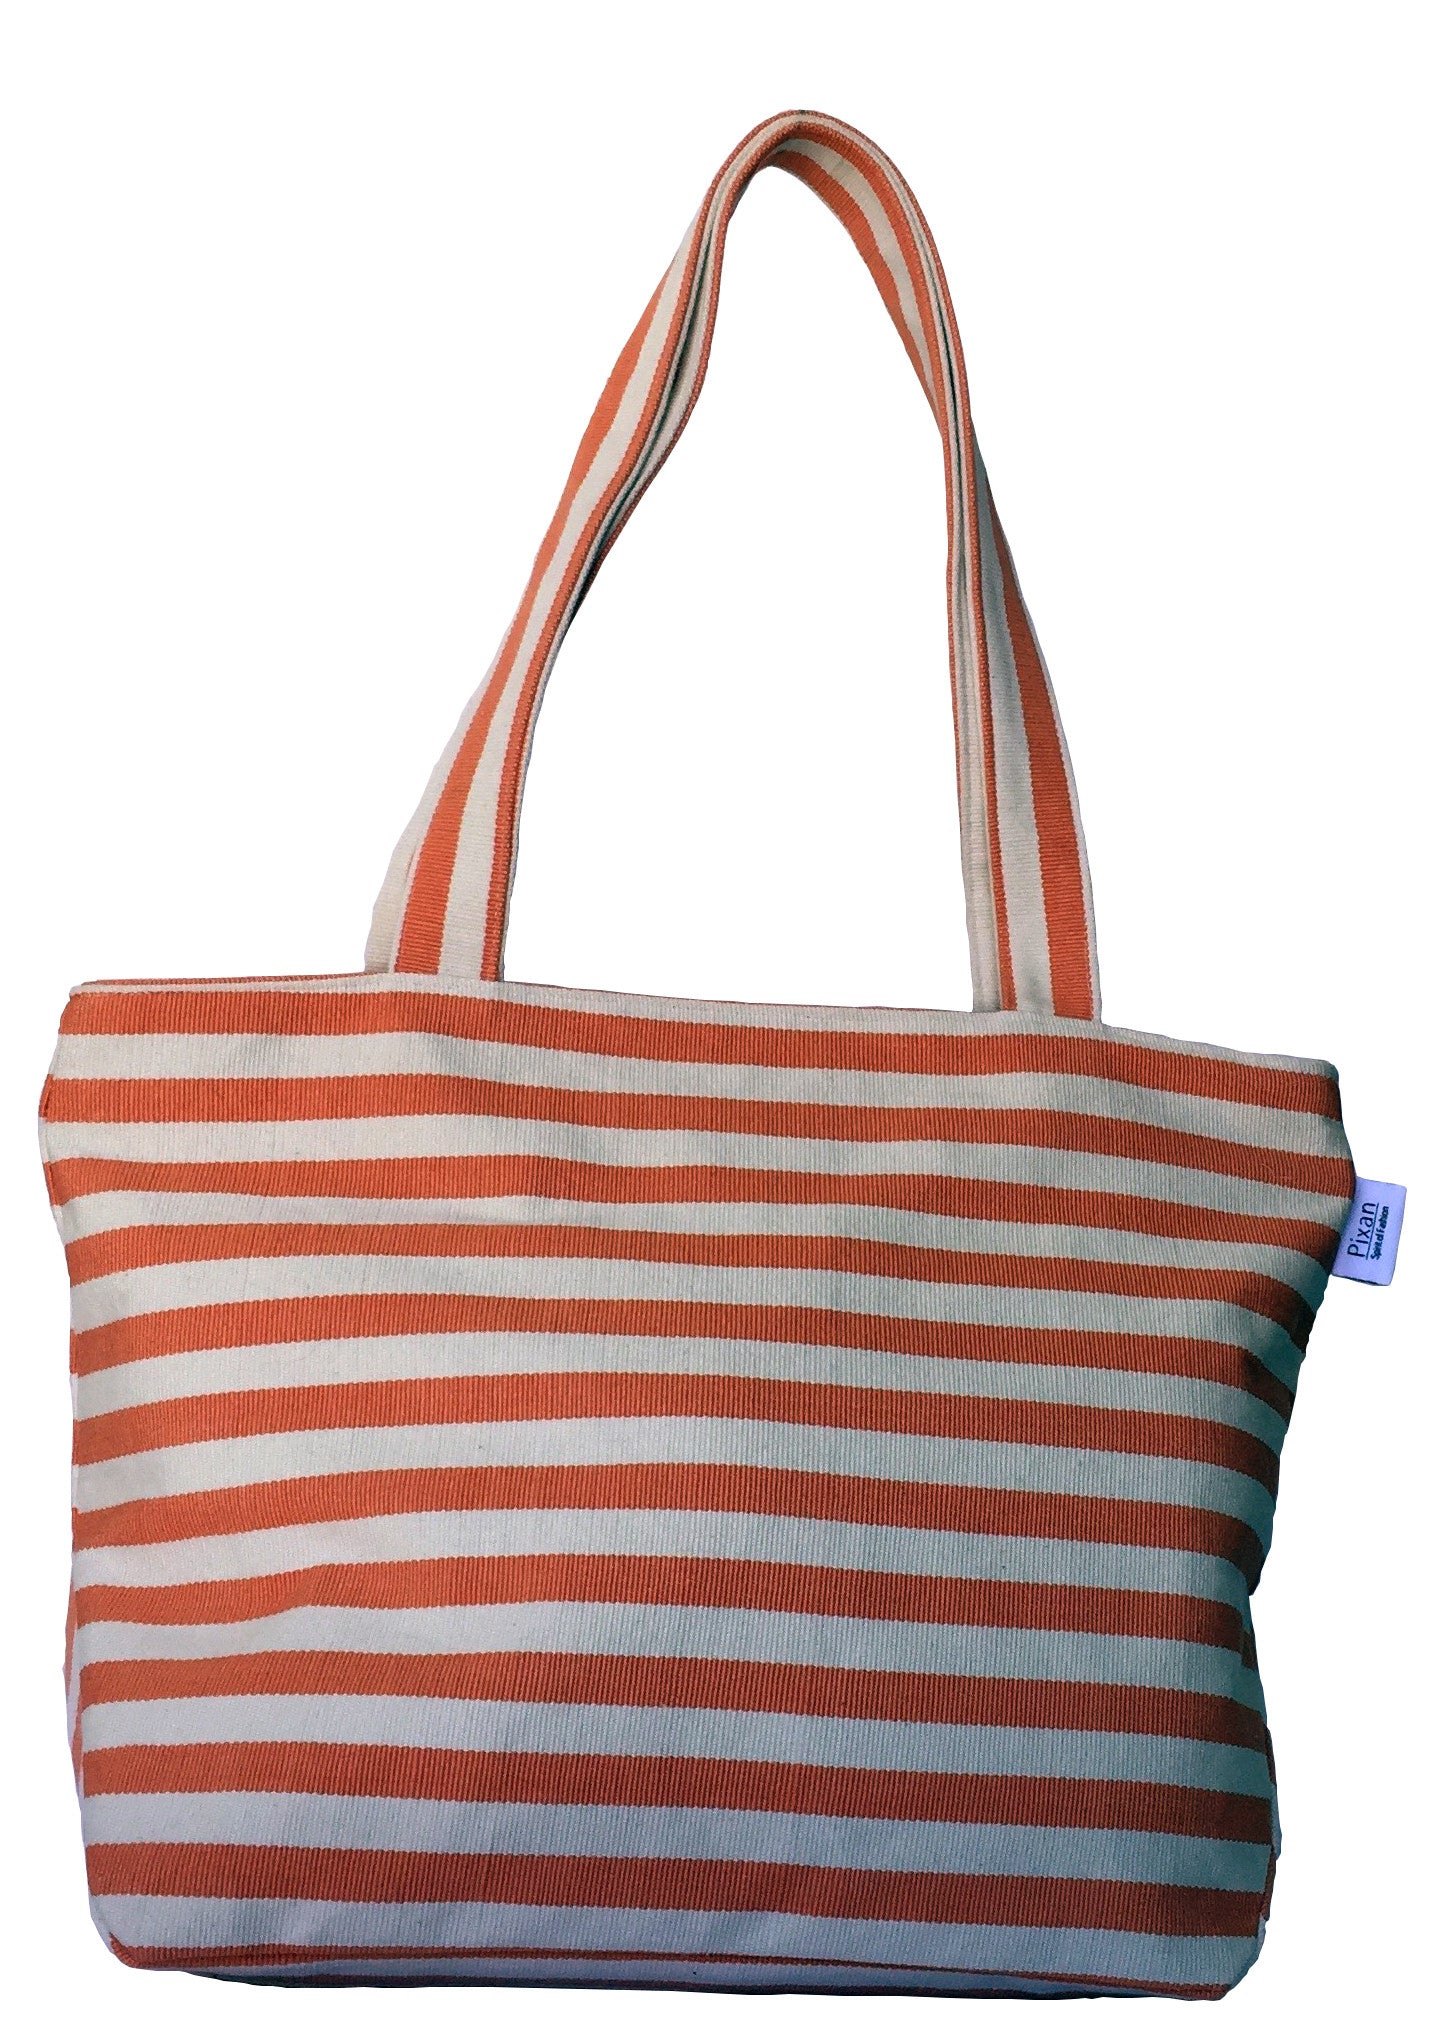 Natural Dye Striped Tote Bag